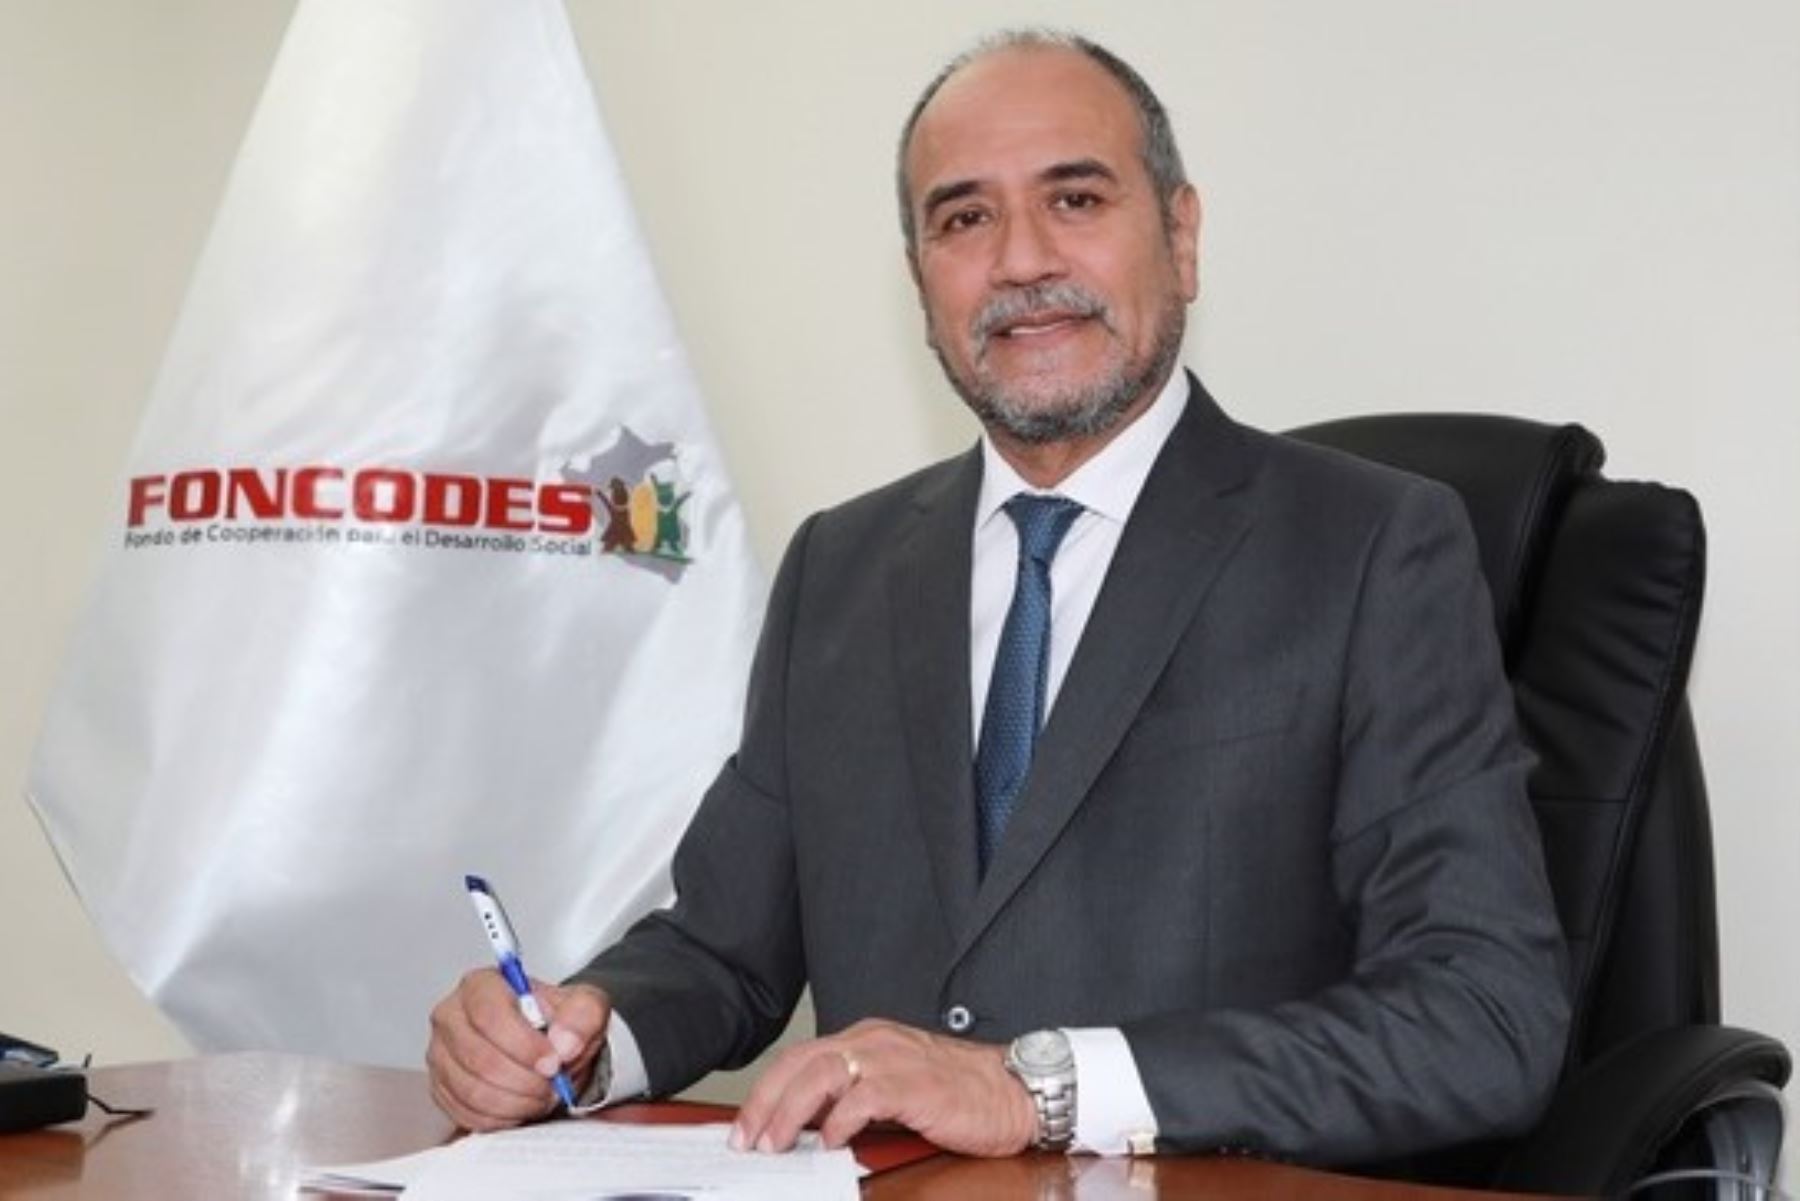 César Adolfo Mallea Geiser, el nuevo director ejecutivo del Foncodes, es contador público colegiado certificado. Foto: Foncodes